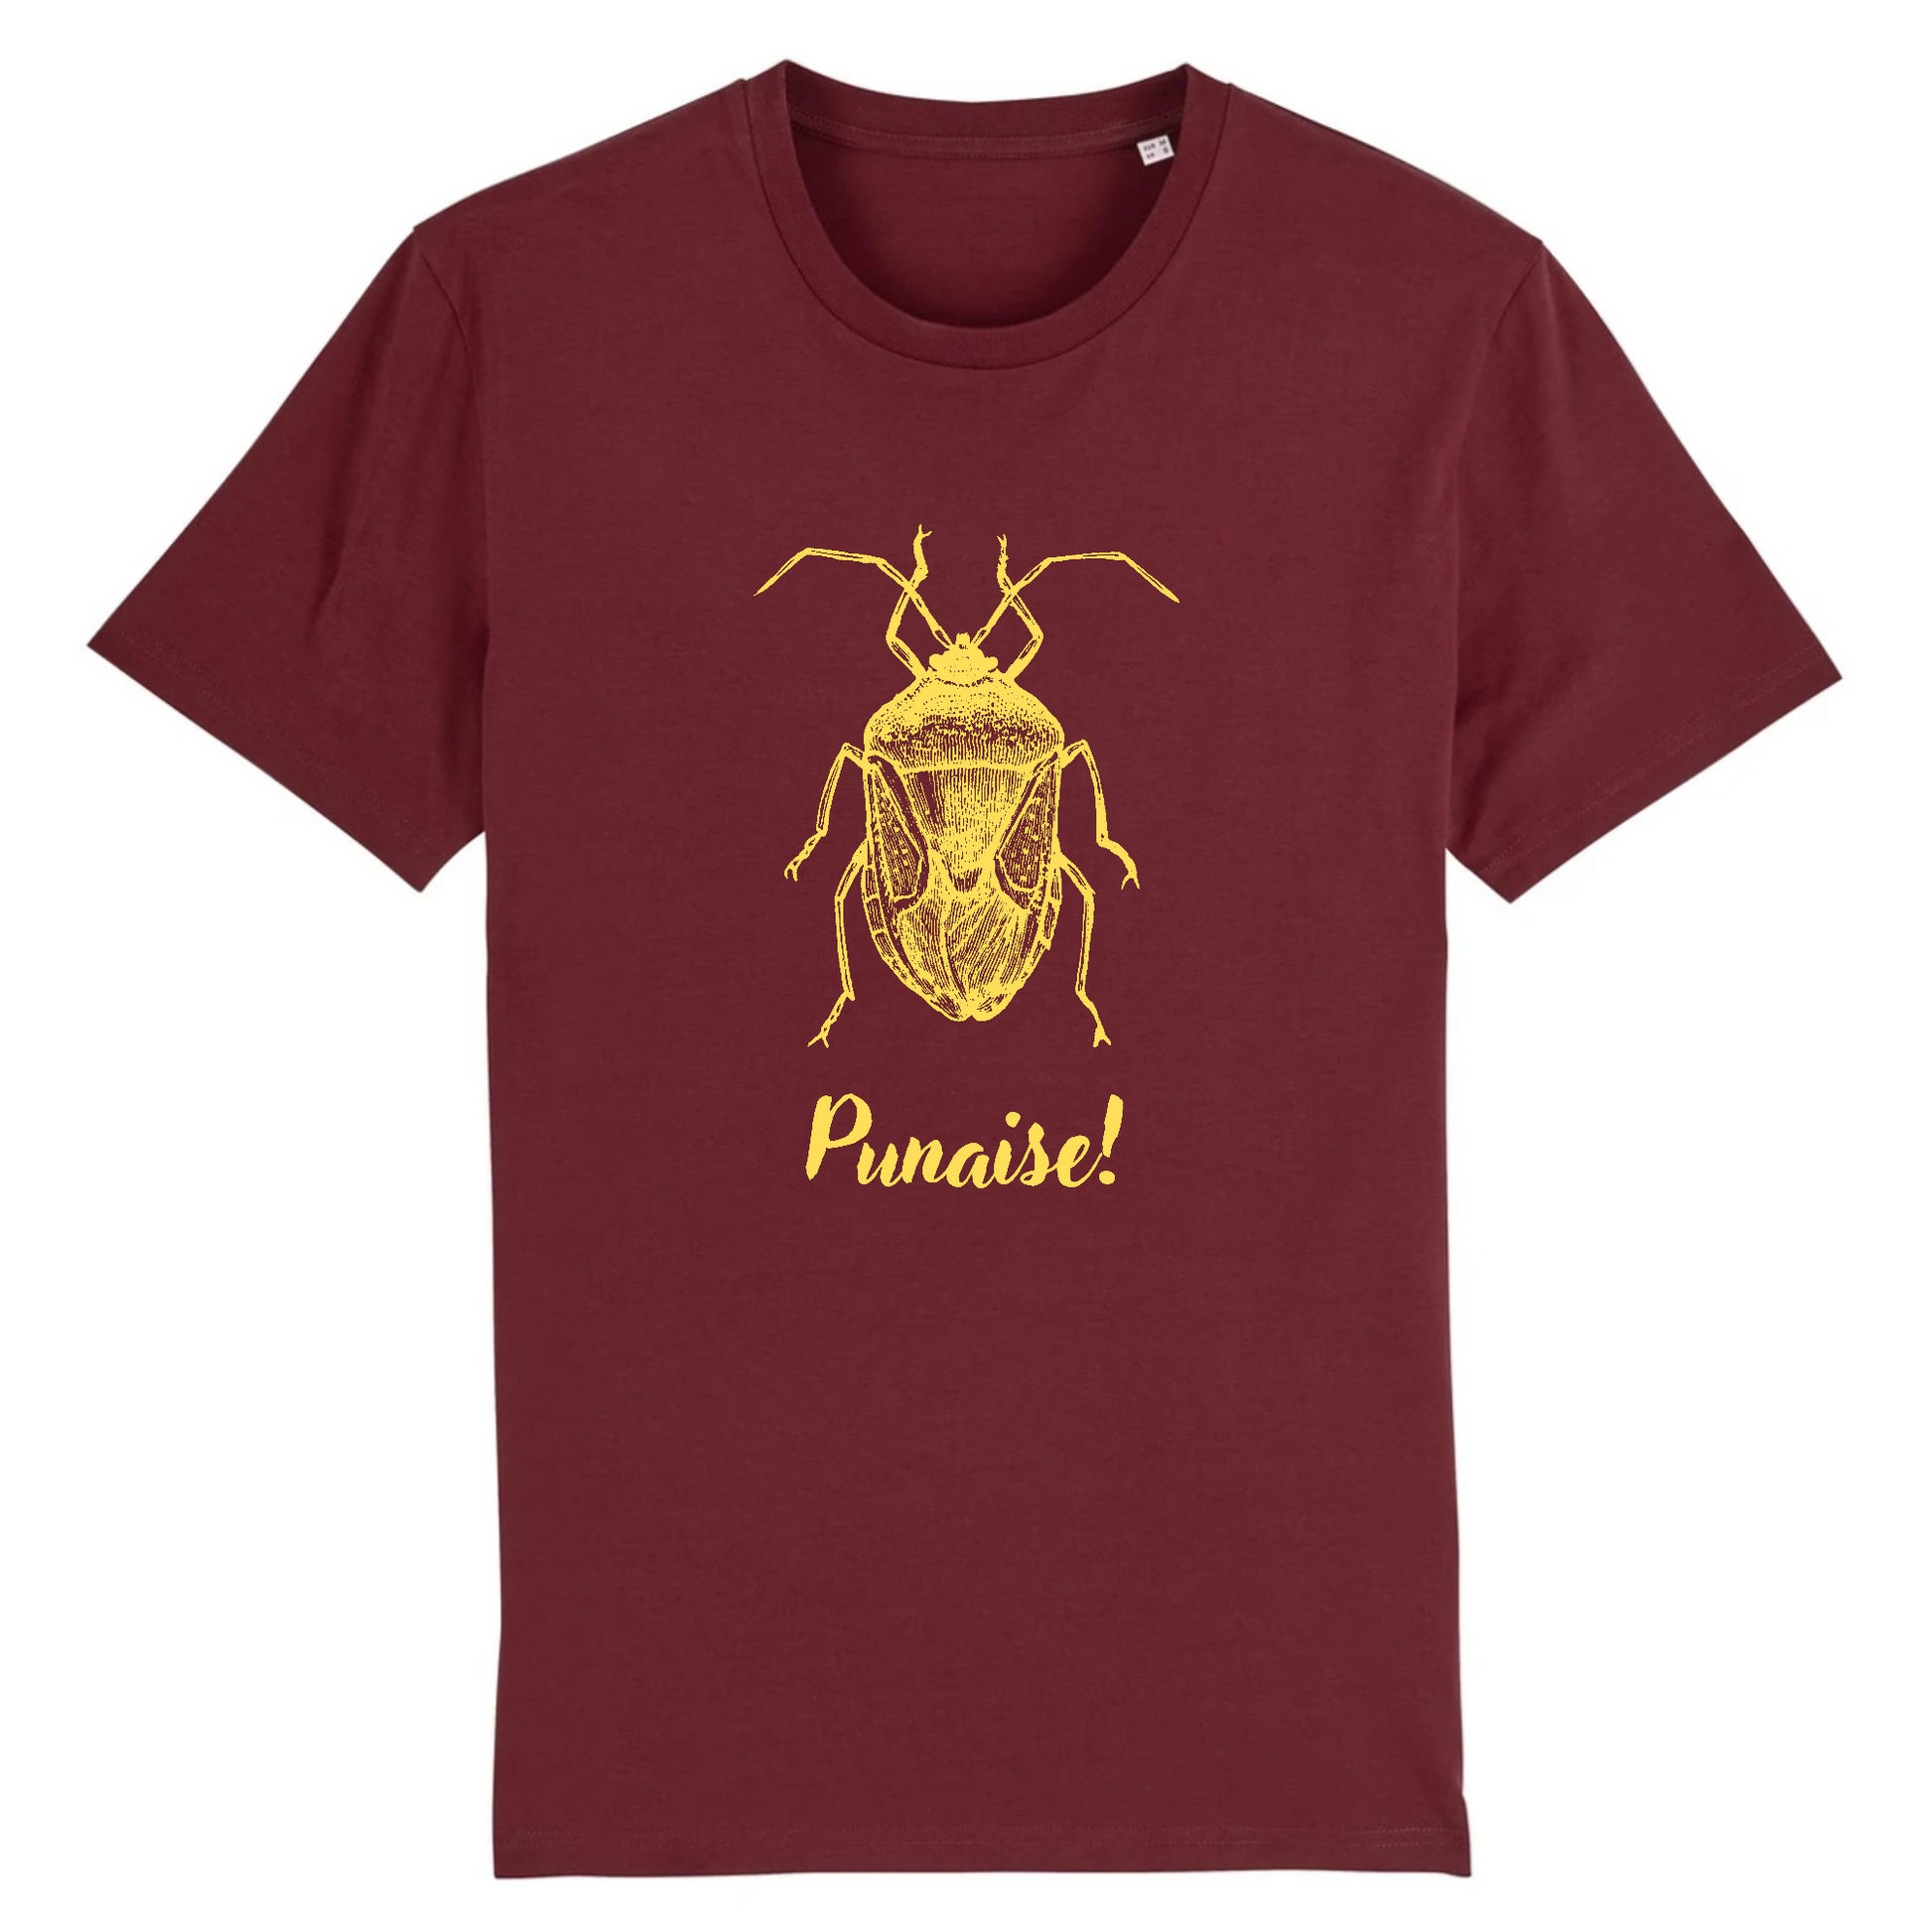 Punaise! | T-shirt Unisexe - Coton BIO - CREATOR | Bordeaux